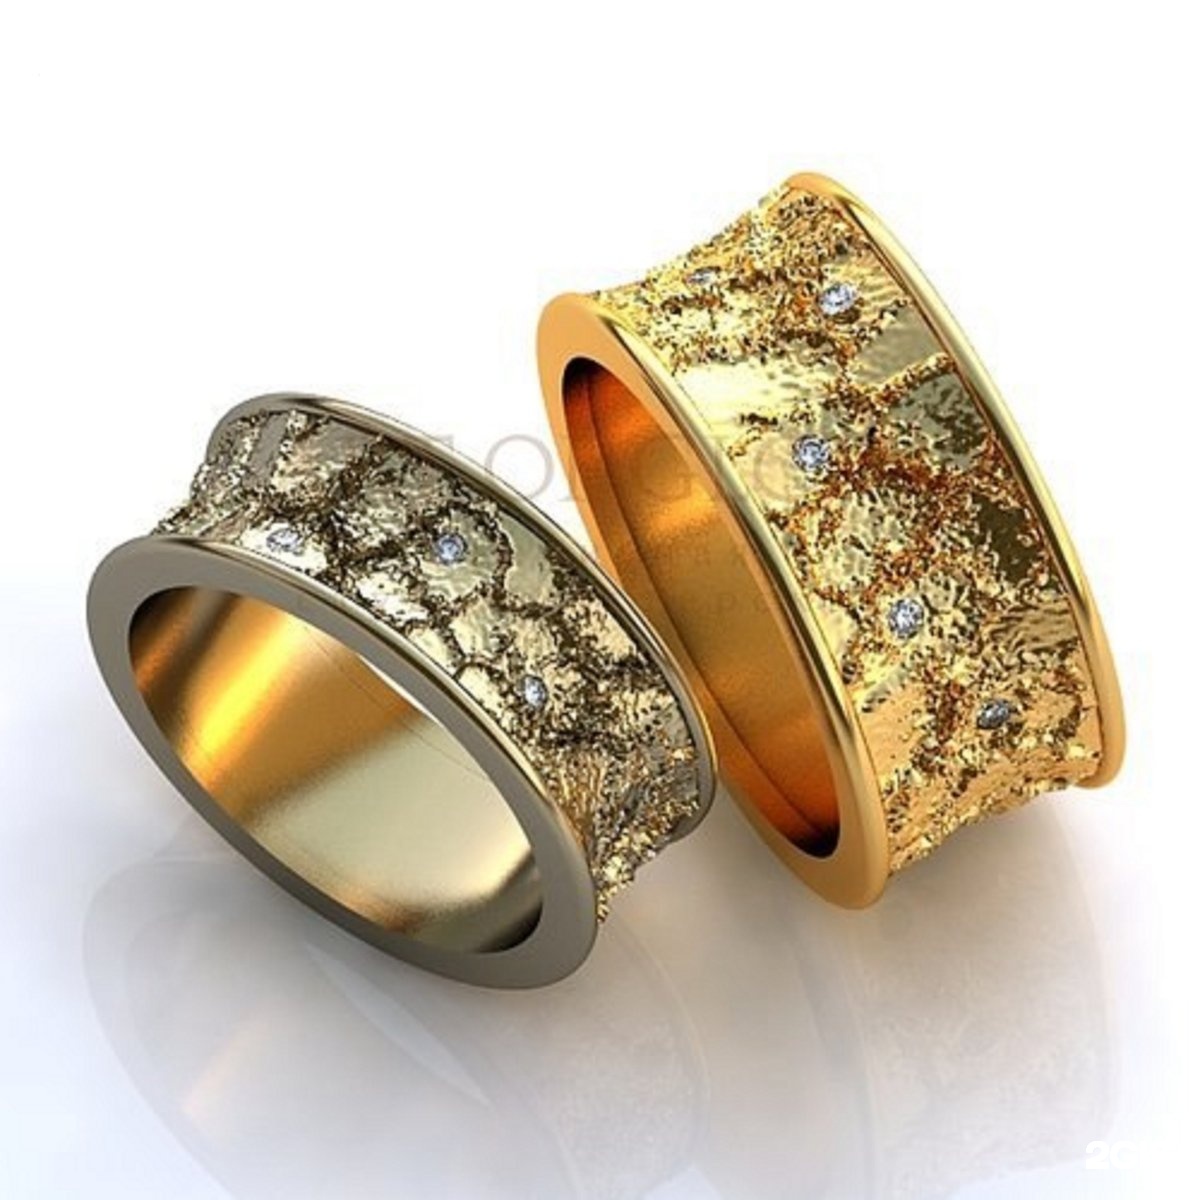 Европейские золотые кольца. Оригинальные обручальные кольца. Необычные обручальные кольца. Широкие обручальные кольца. Красивые обручальные кольца.